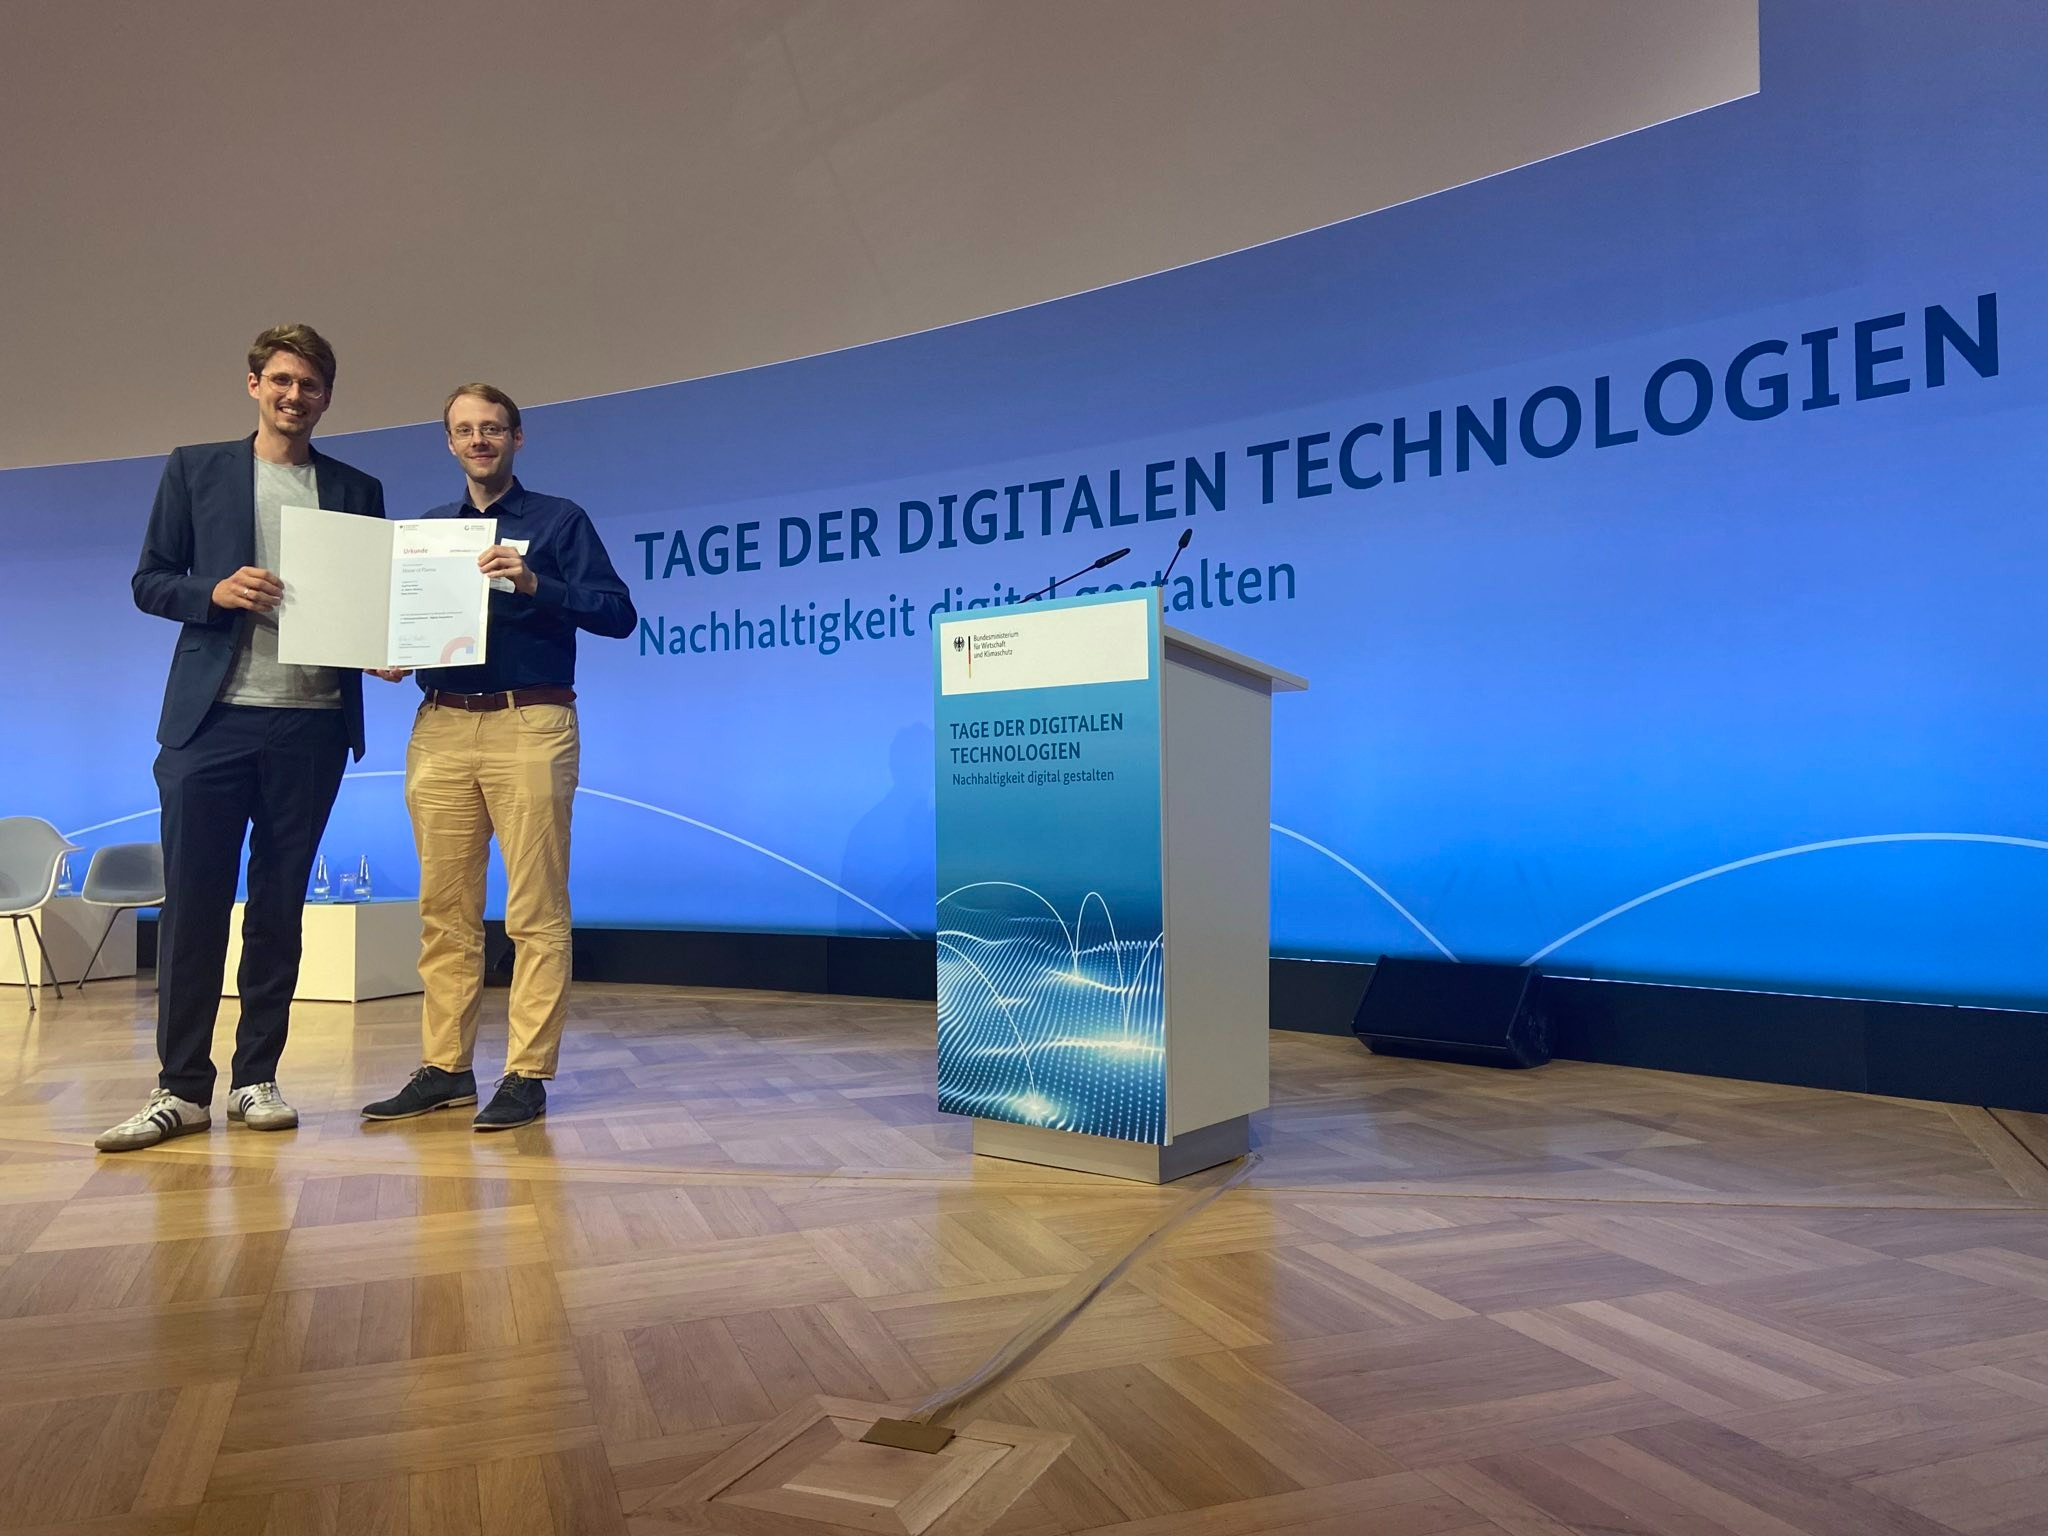 Moritz Oberberg und Geoffrey Mellar auf der Bühne der Veranstaltung "Tage der digitalen Technologien" mit der Urkunde zum Gründungspreis